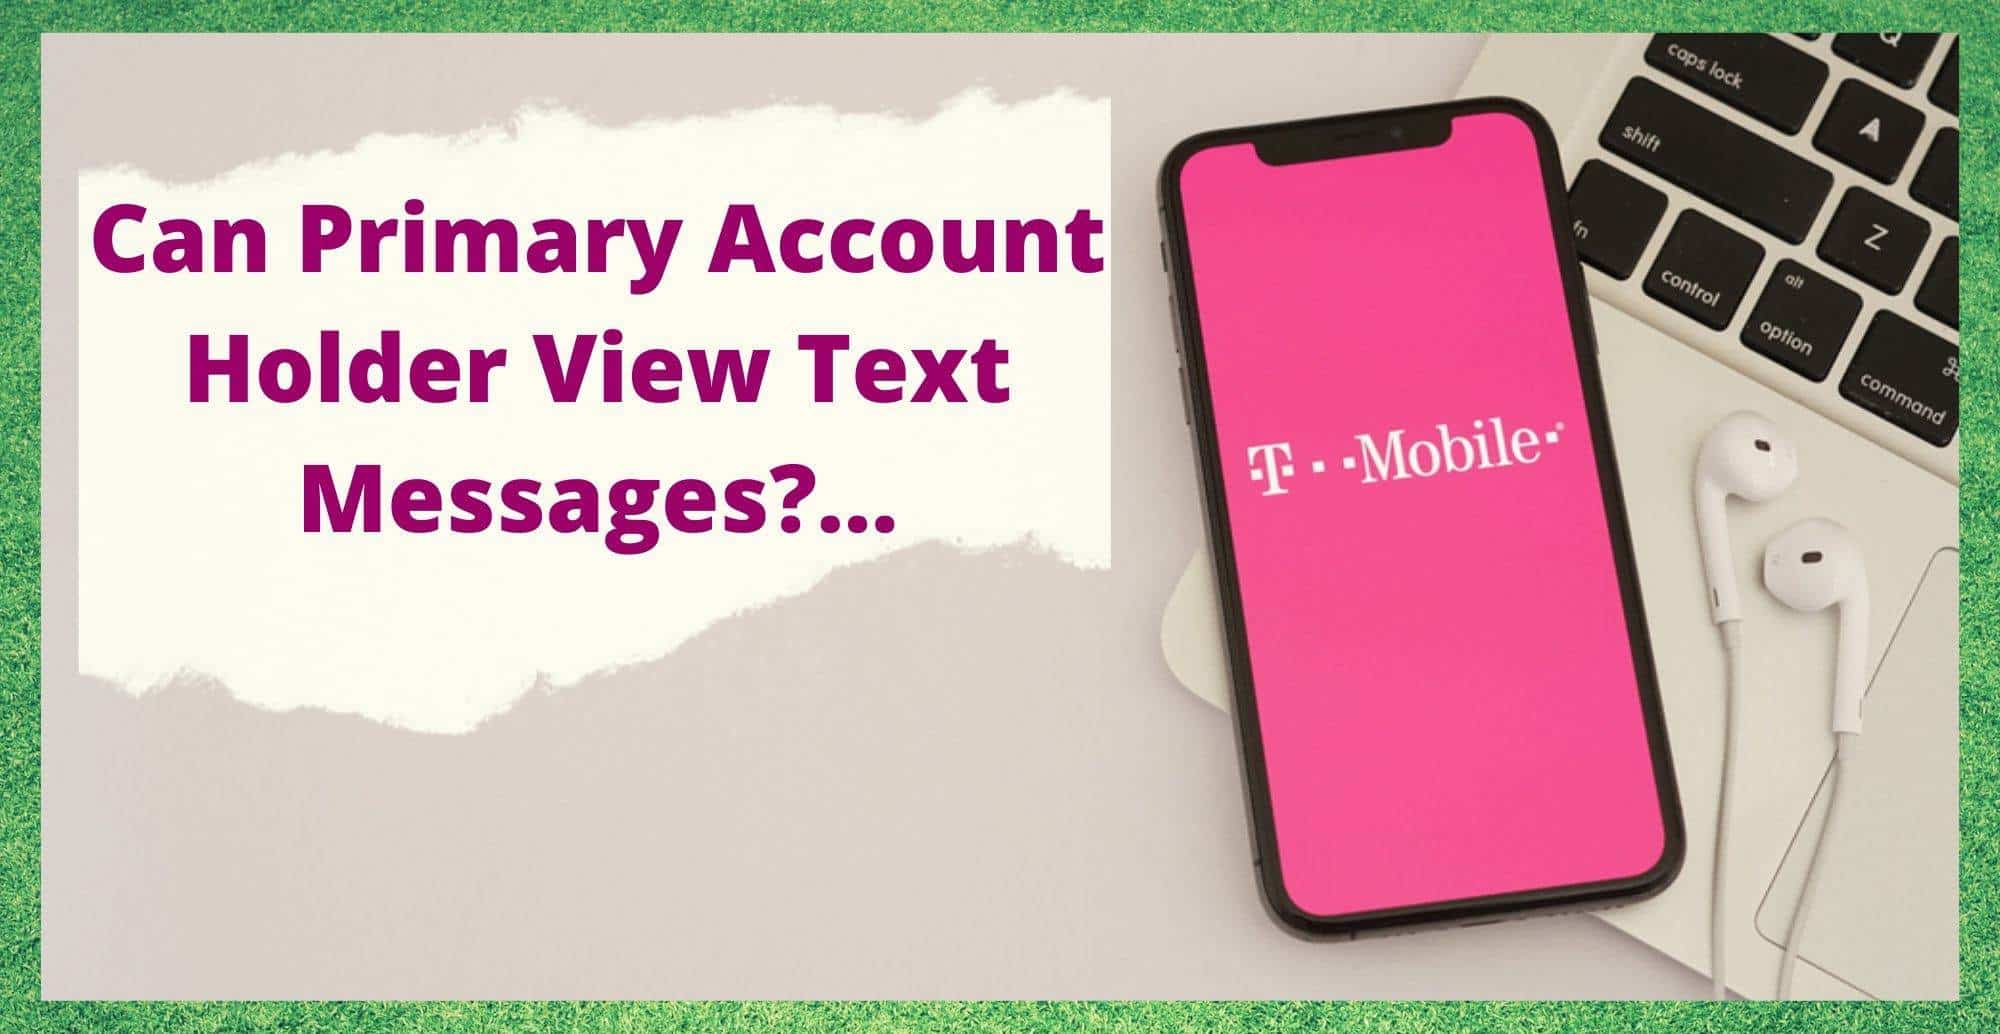 T-Mobile: Kan primaire rekeninghouder tekstberichten bekijken?